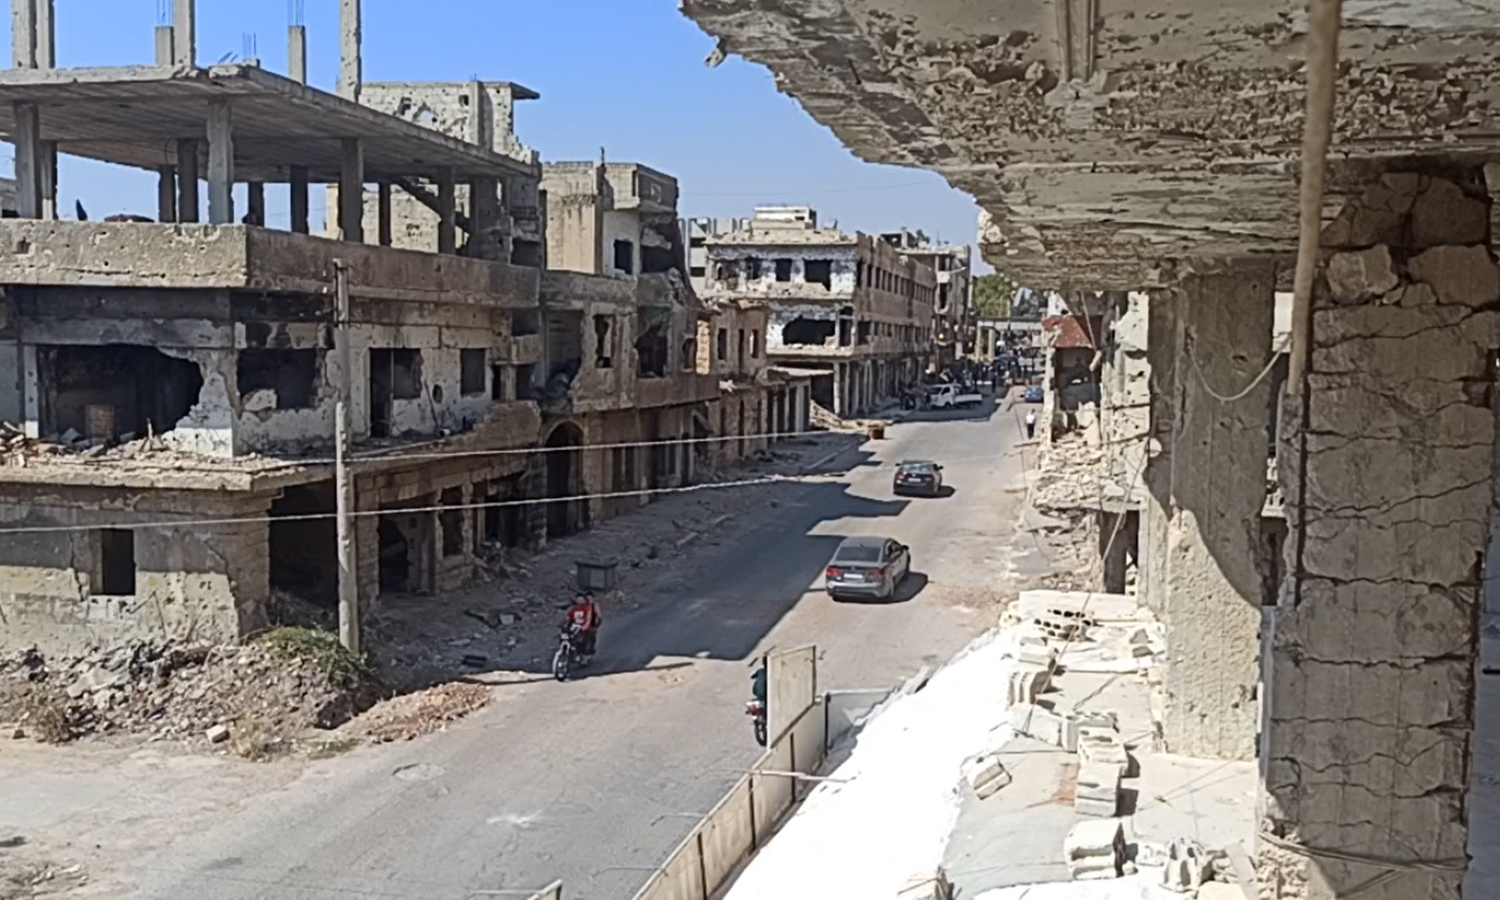 درعا ونهاية الرهان على الحل الدولي في سورية